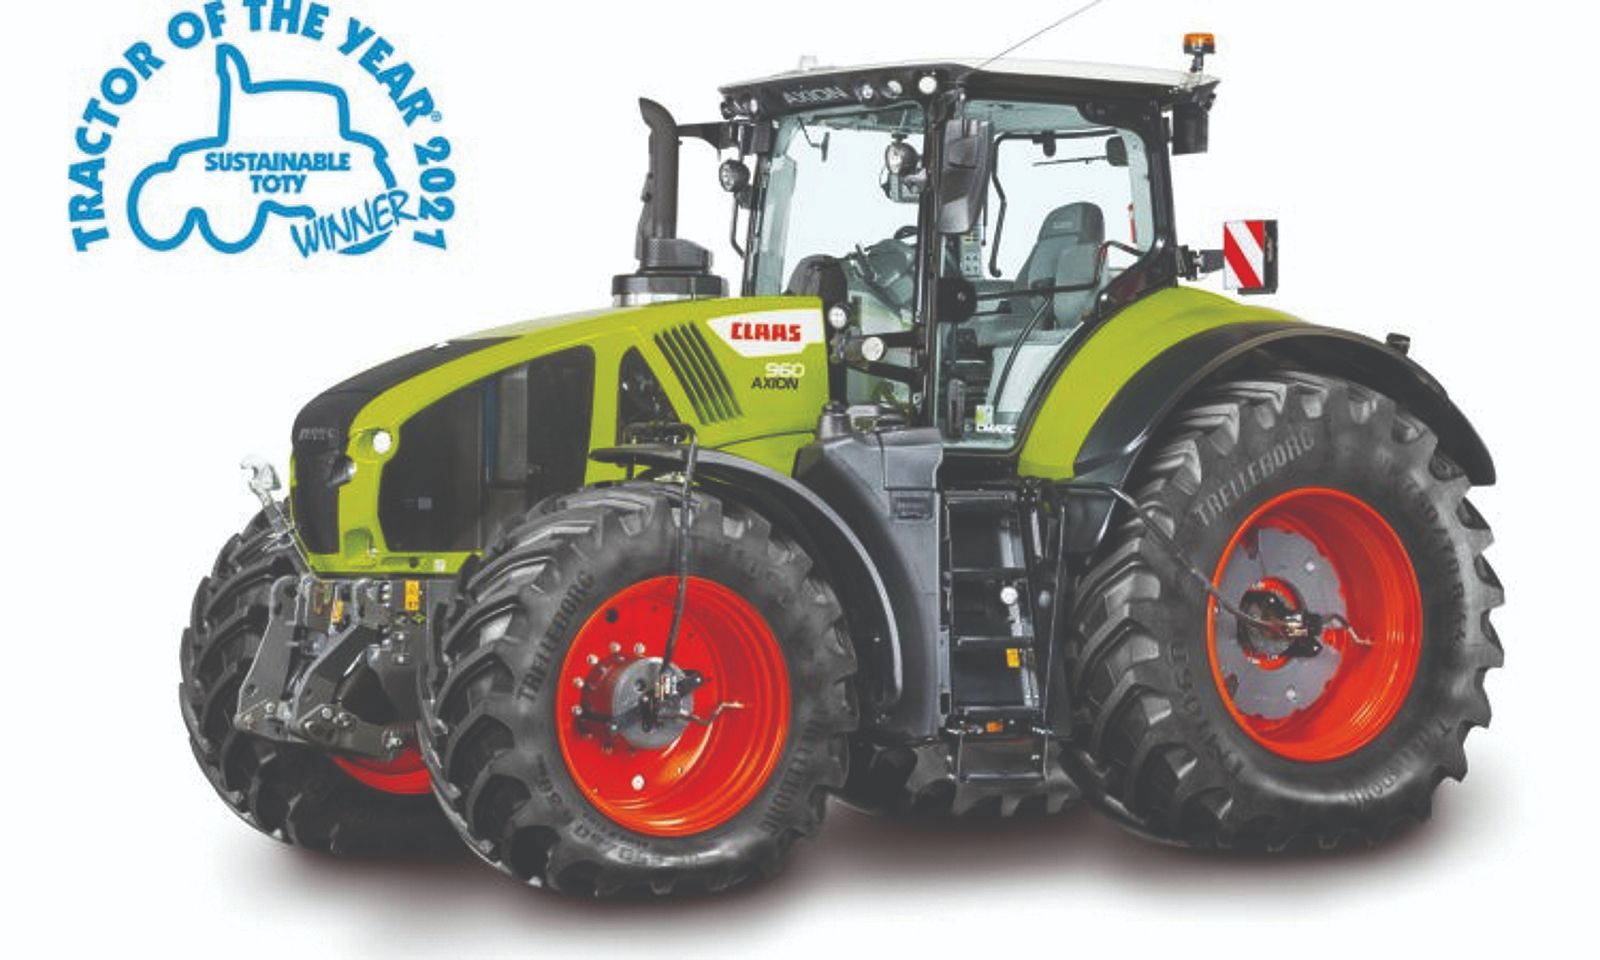 Izvrsne performanse učinkovitog i štedljivog traktora